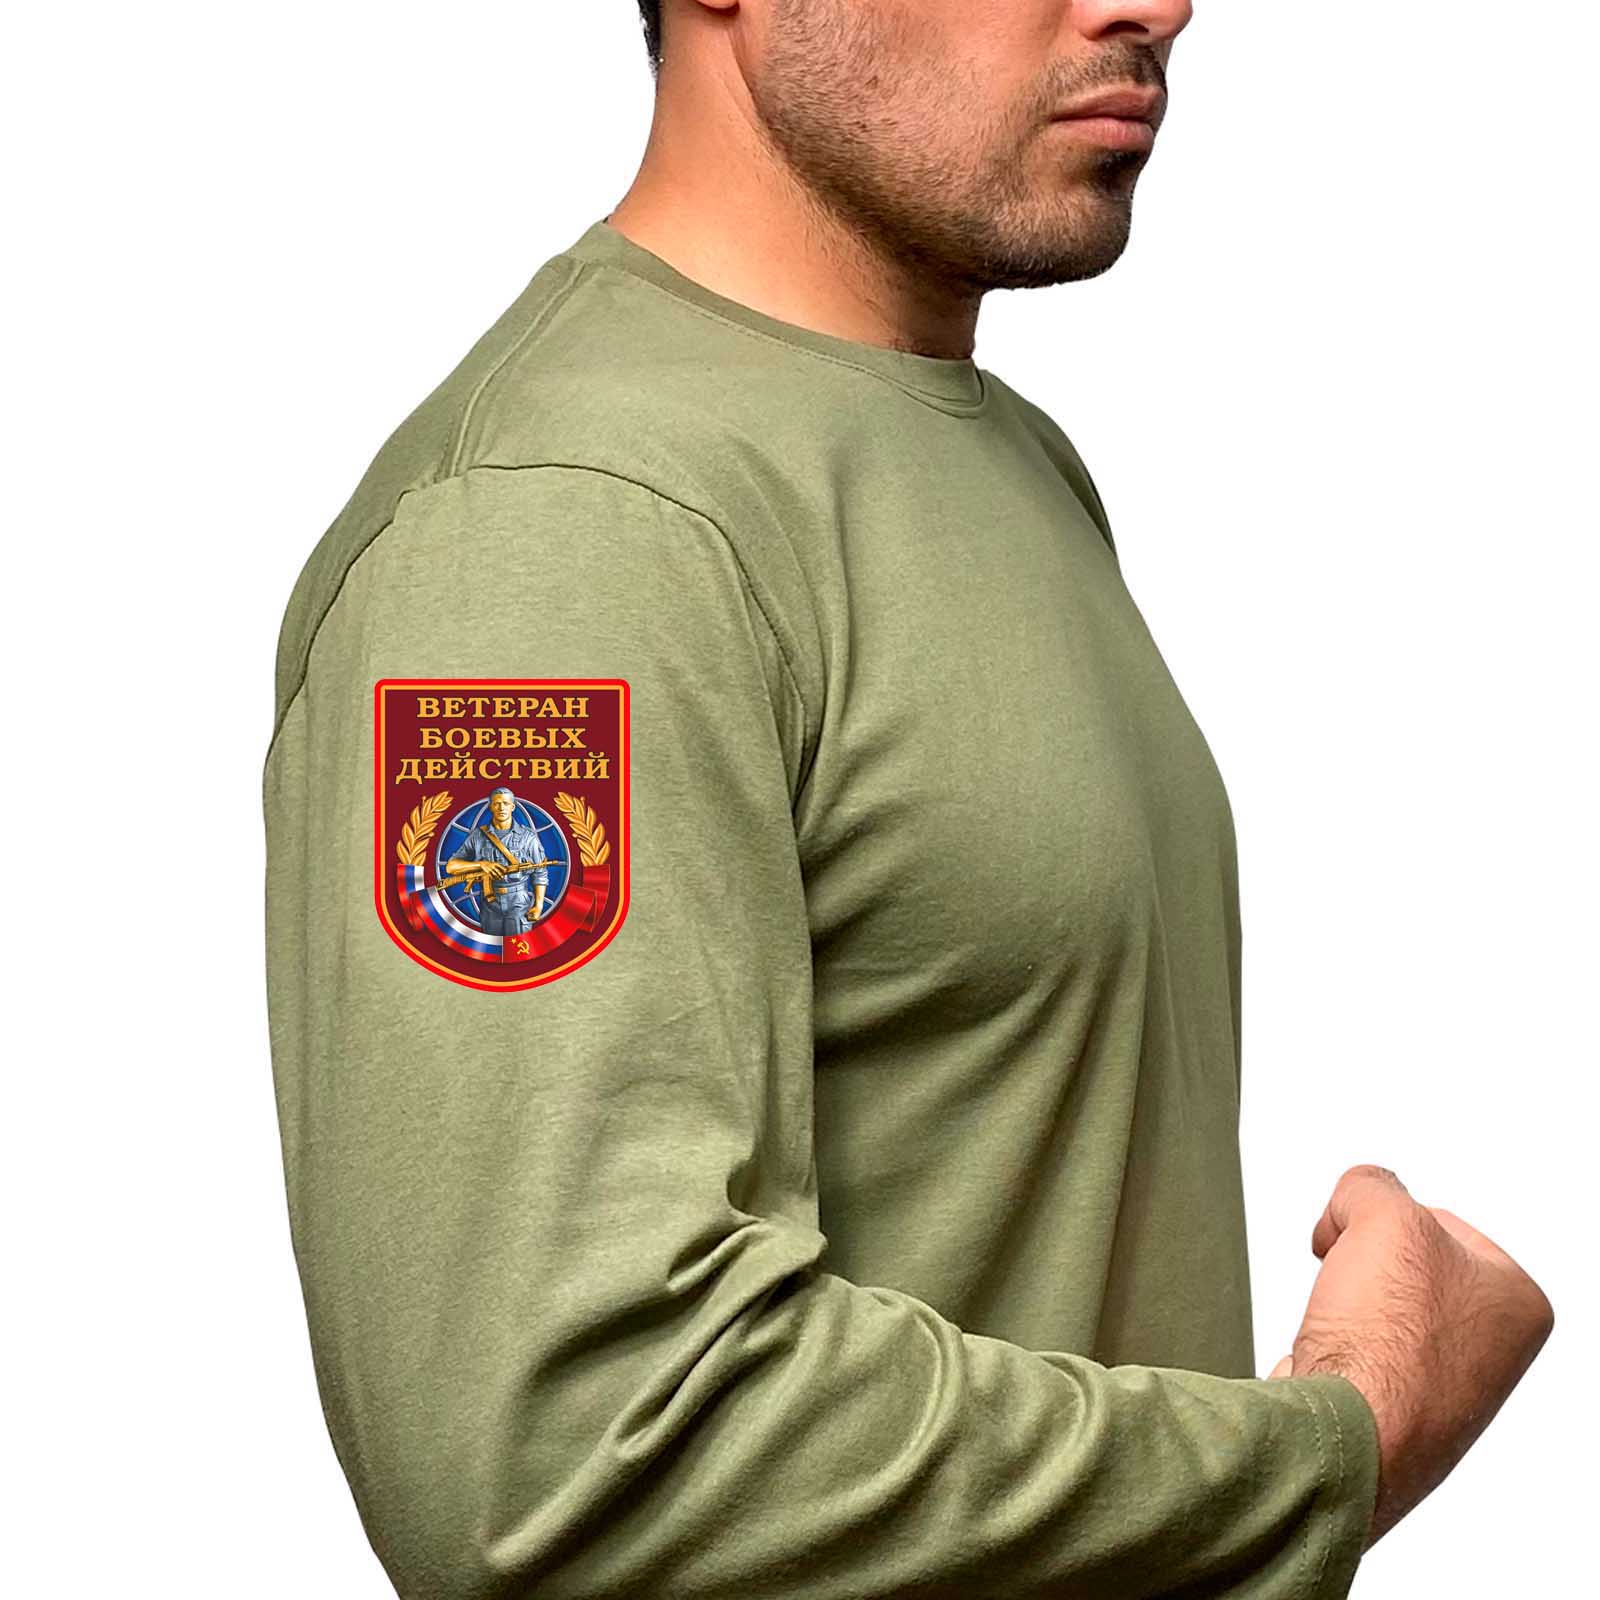 Купить надежную футболку с длинным рукавом с термотрансфером Ветеран боевых действий онлайн